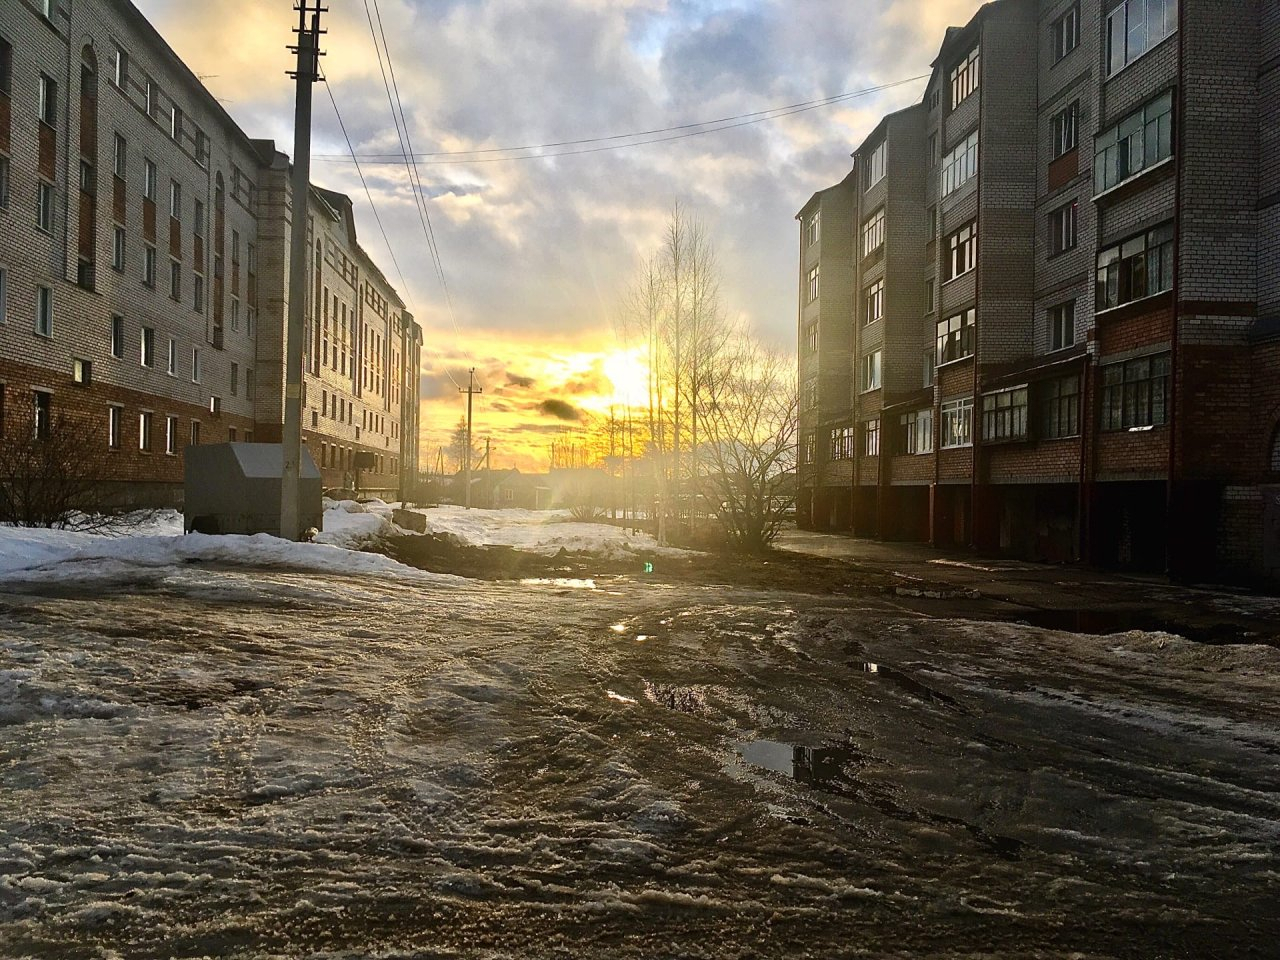 Фото дня в Сыктывкаре: заходящее солнце и обледенелый двор